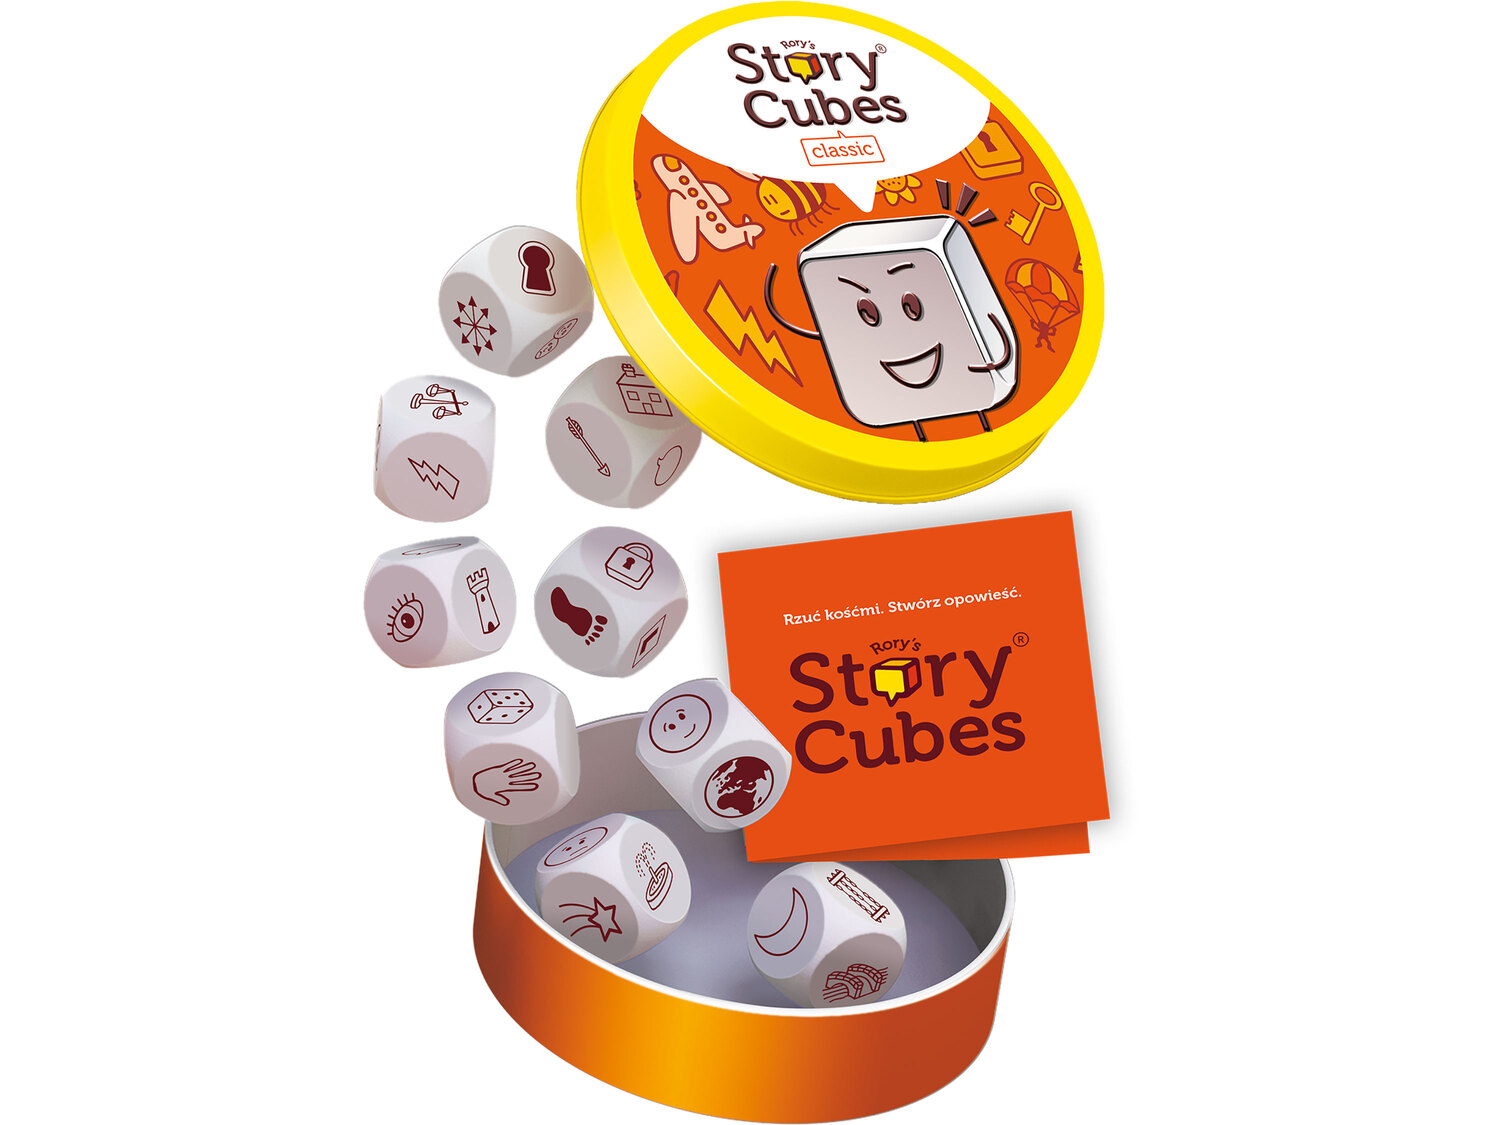 Story Cubes , cena 39,99 PLN 
- wciągająca gra kreatywna
- w zestawie: 9 kostek ...